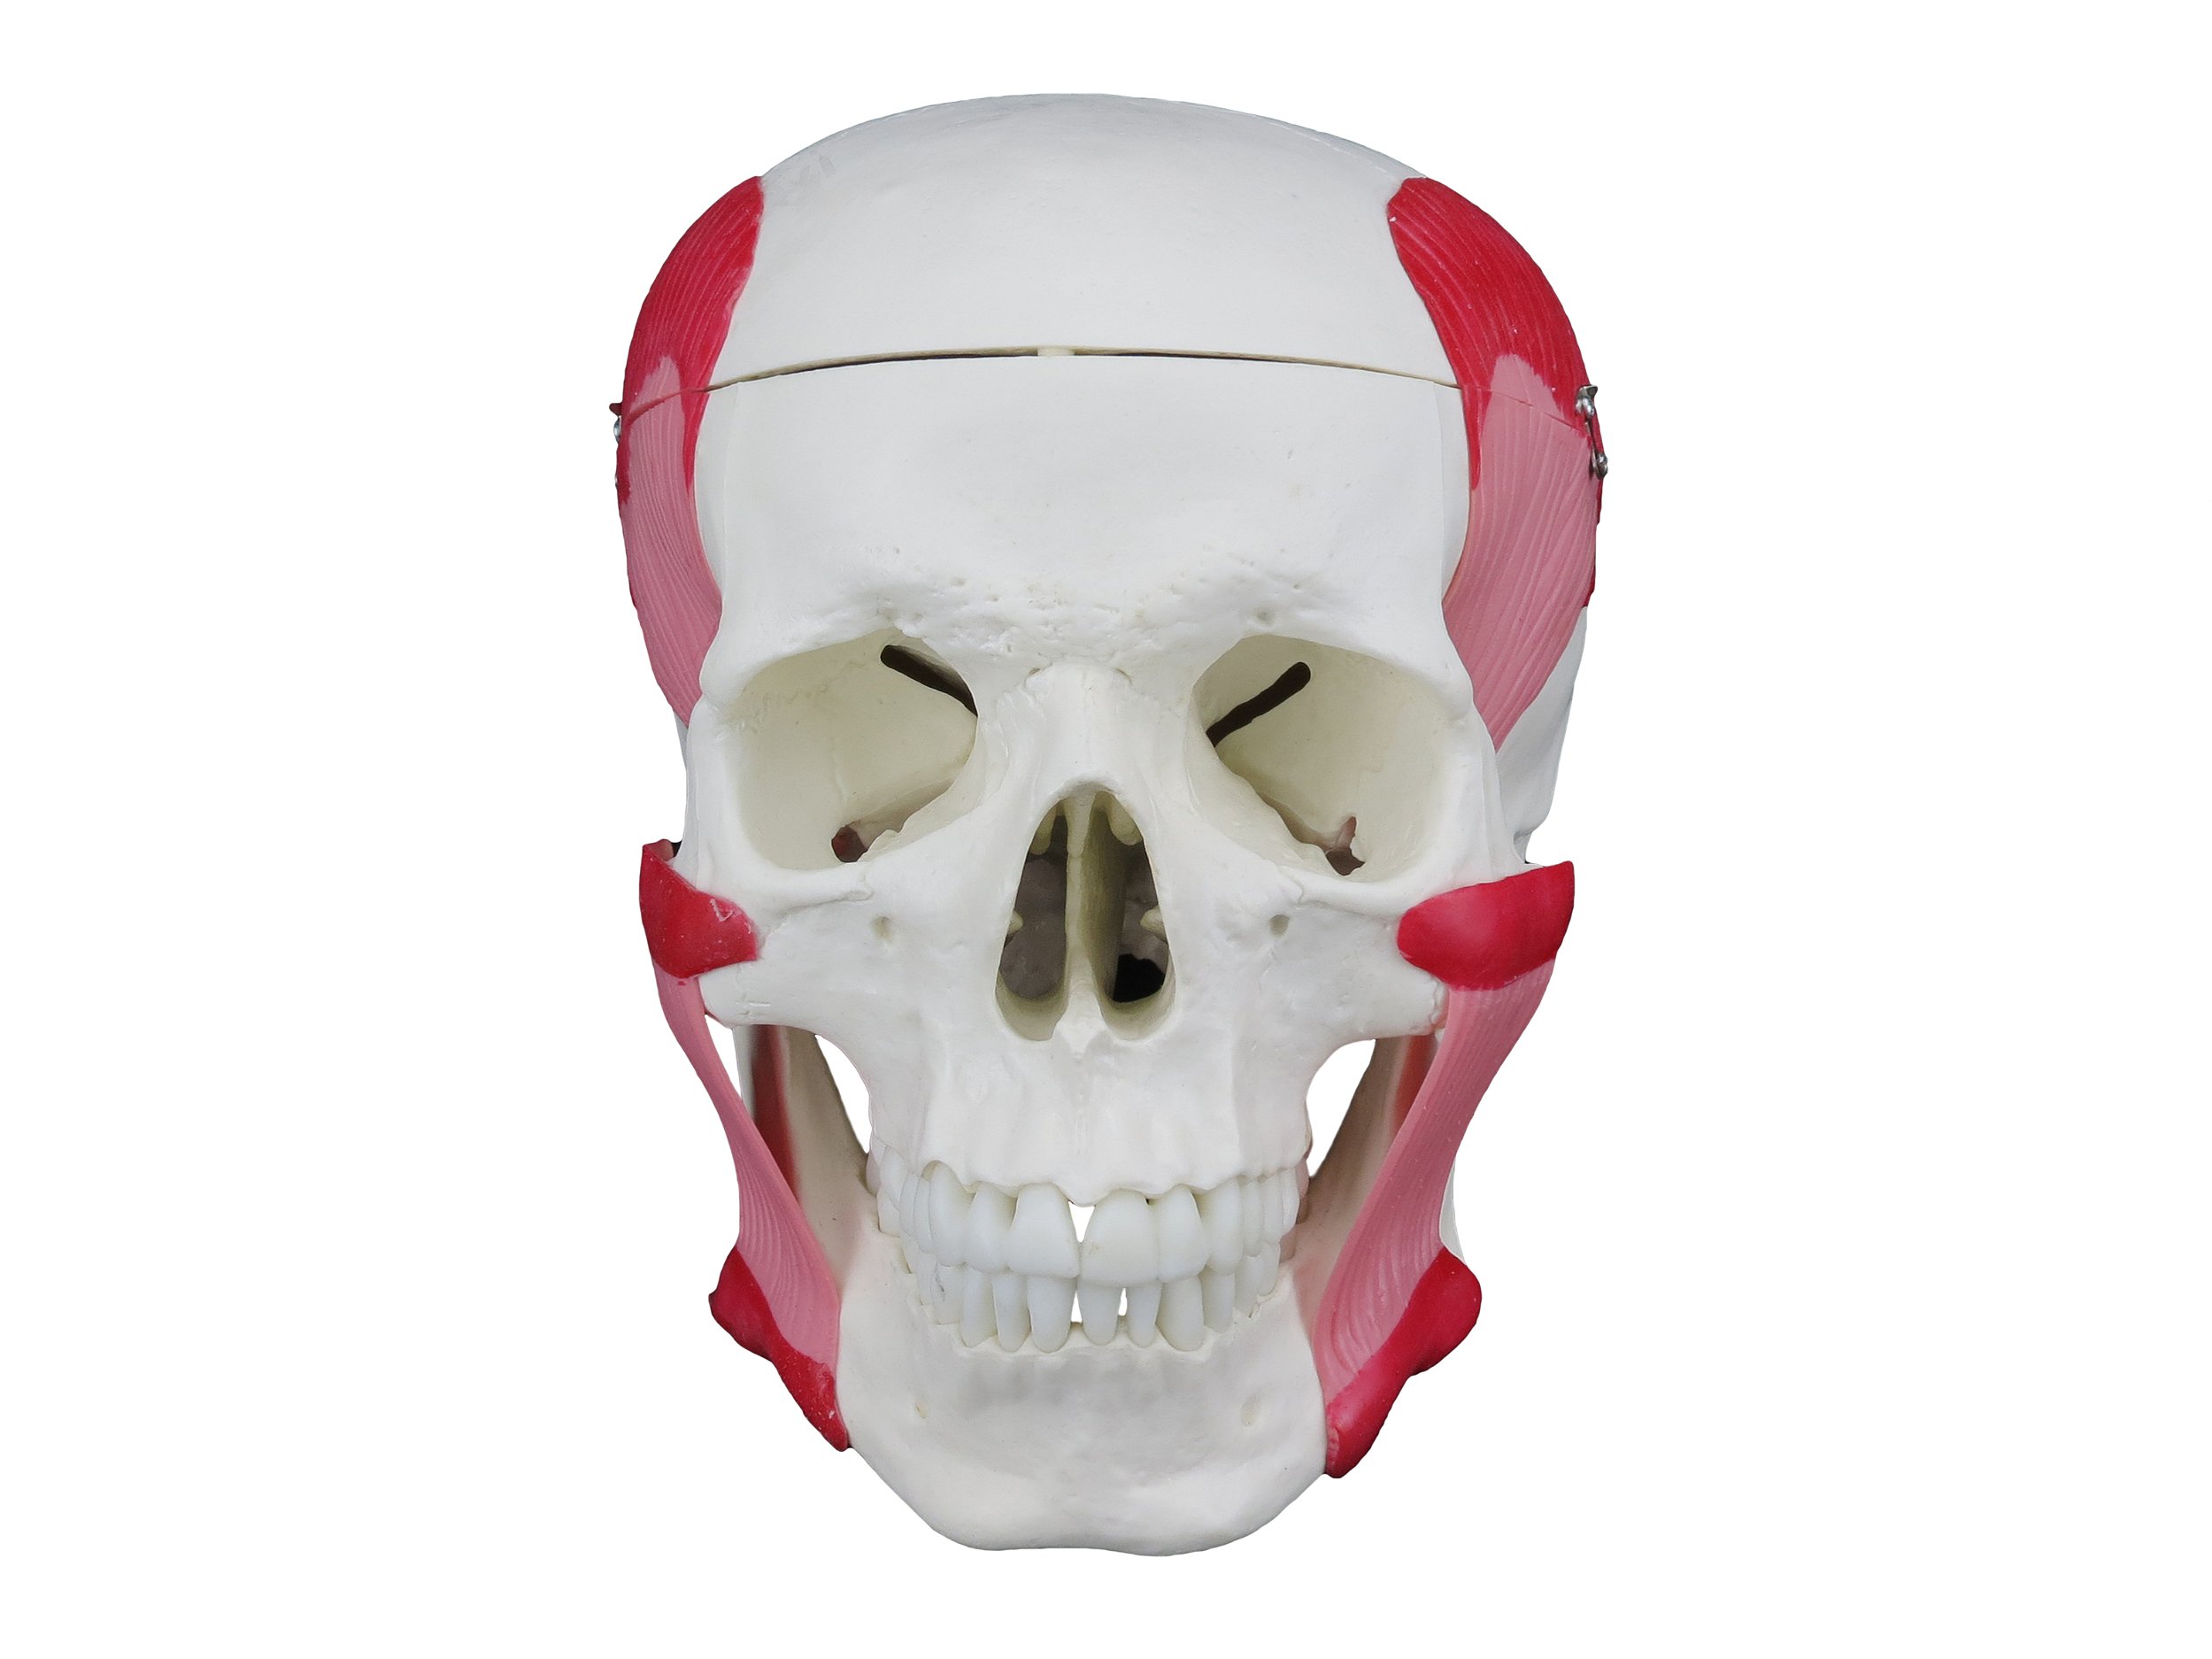 Esqueleto Humano 85 cm - DUMONT SIMULADORES